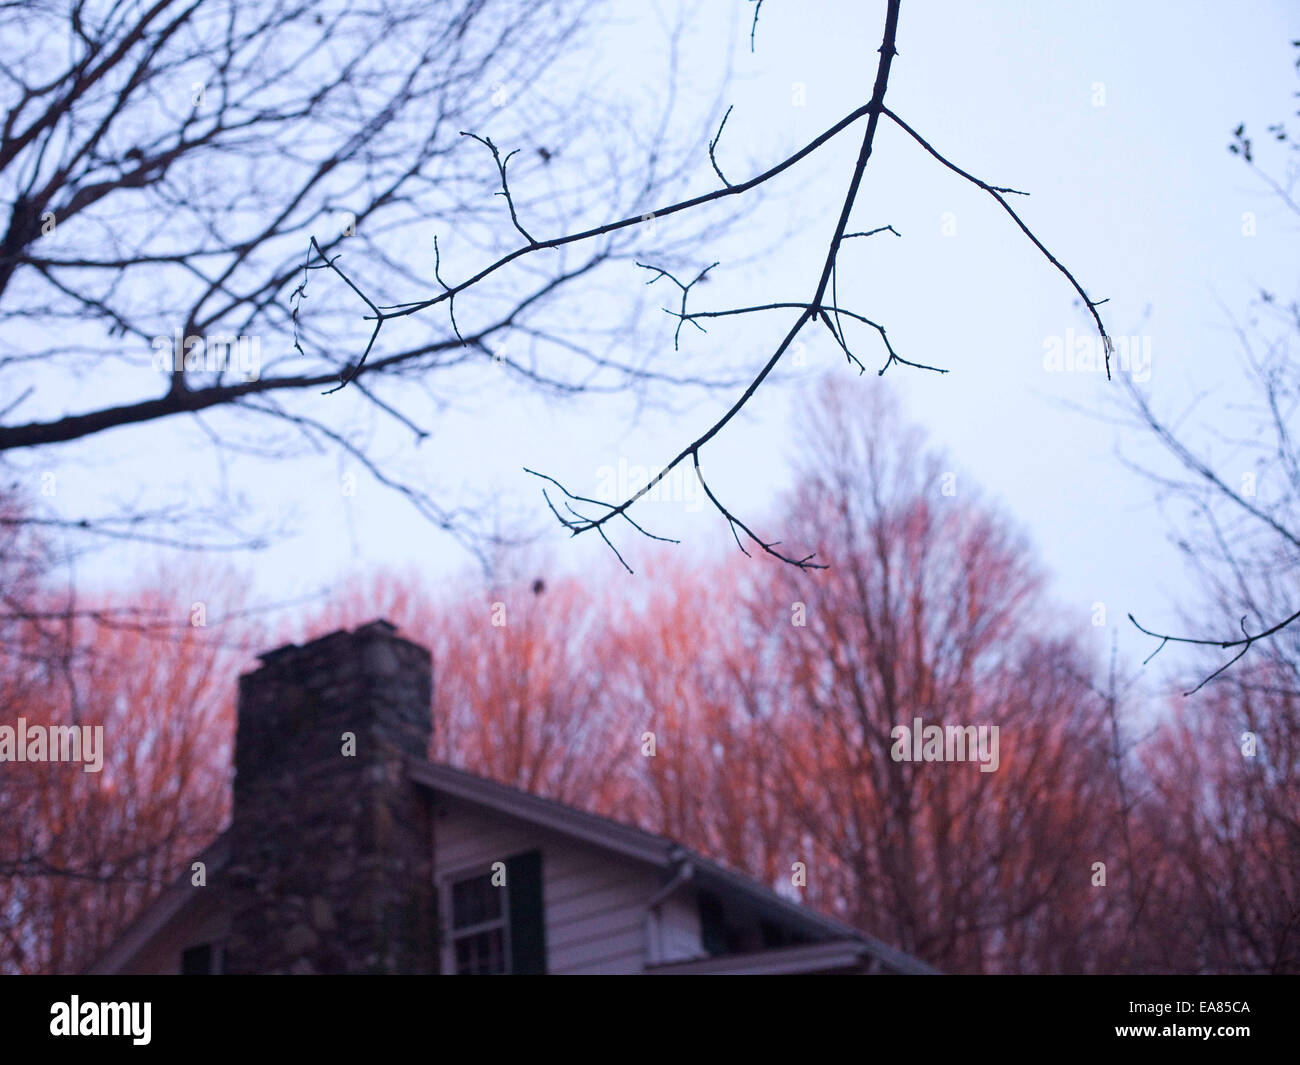 Detalle de la rama y la parte superior de la casa en invierno atardecer Foto de stock